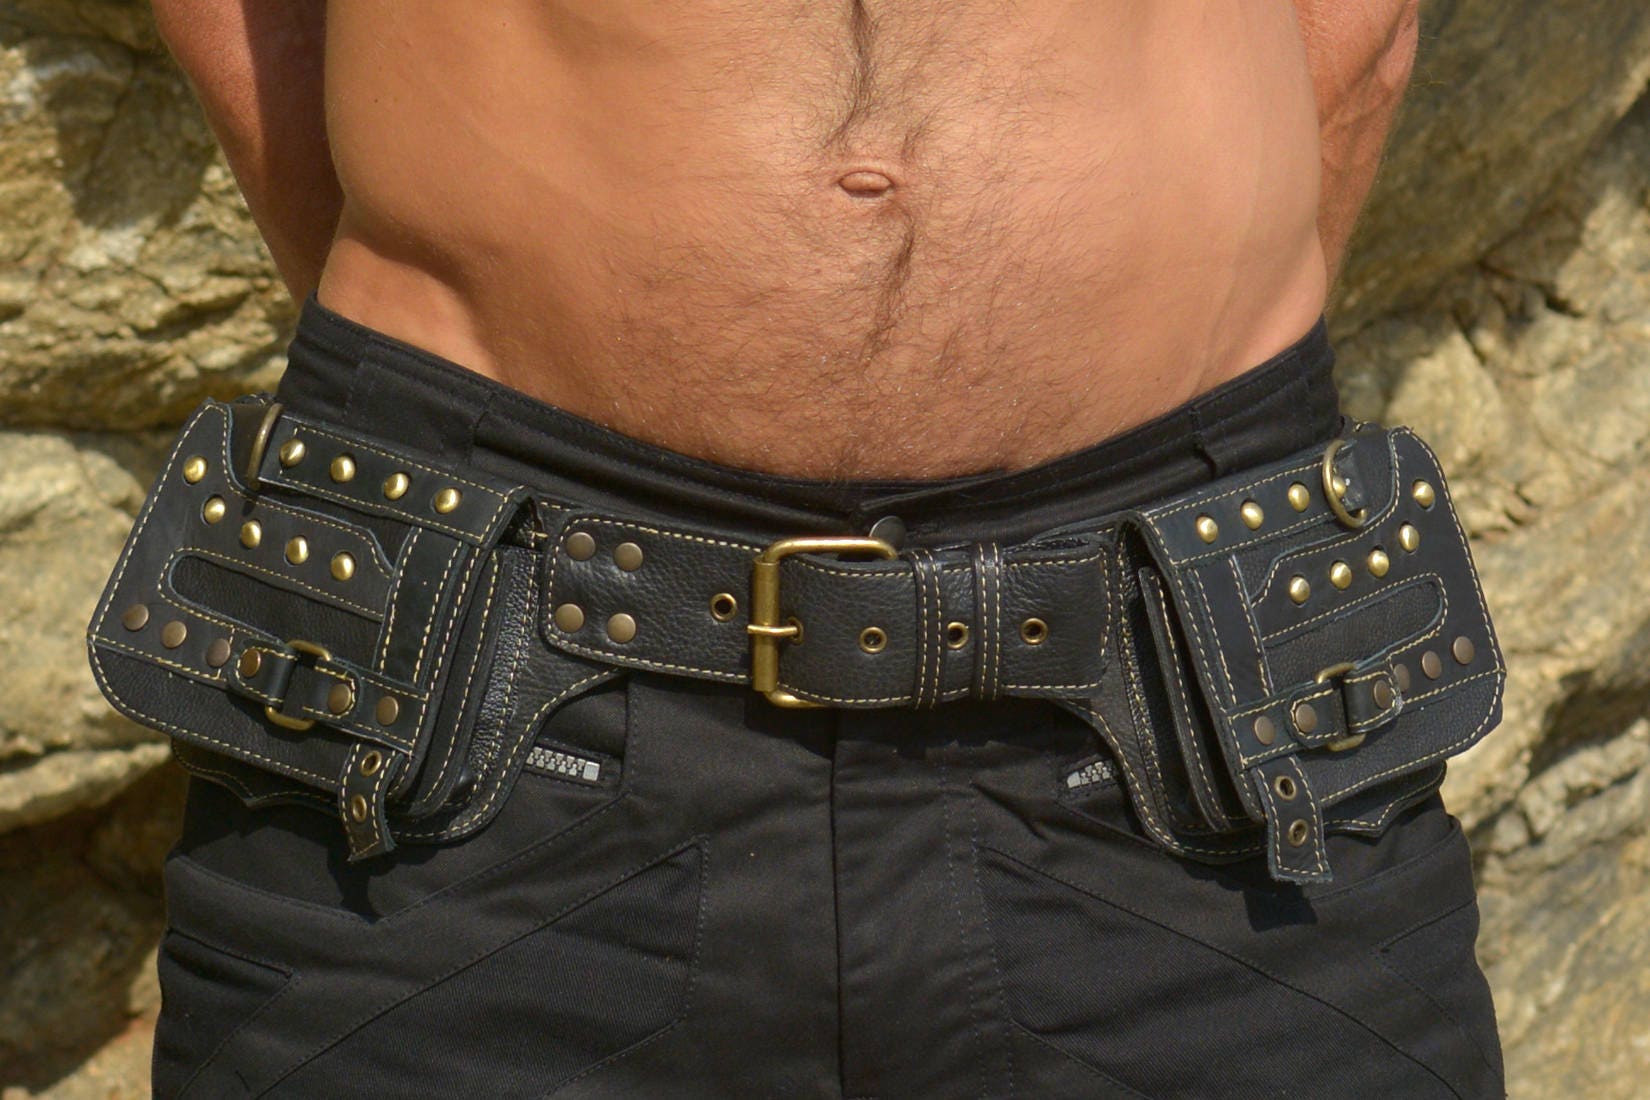 Leather Handmade Festival Utility Pocket Belt For Man | Doof Store